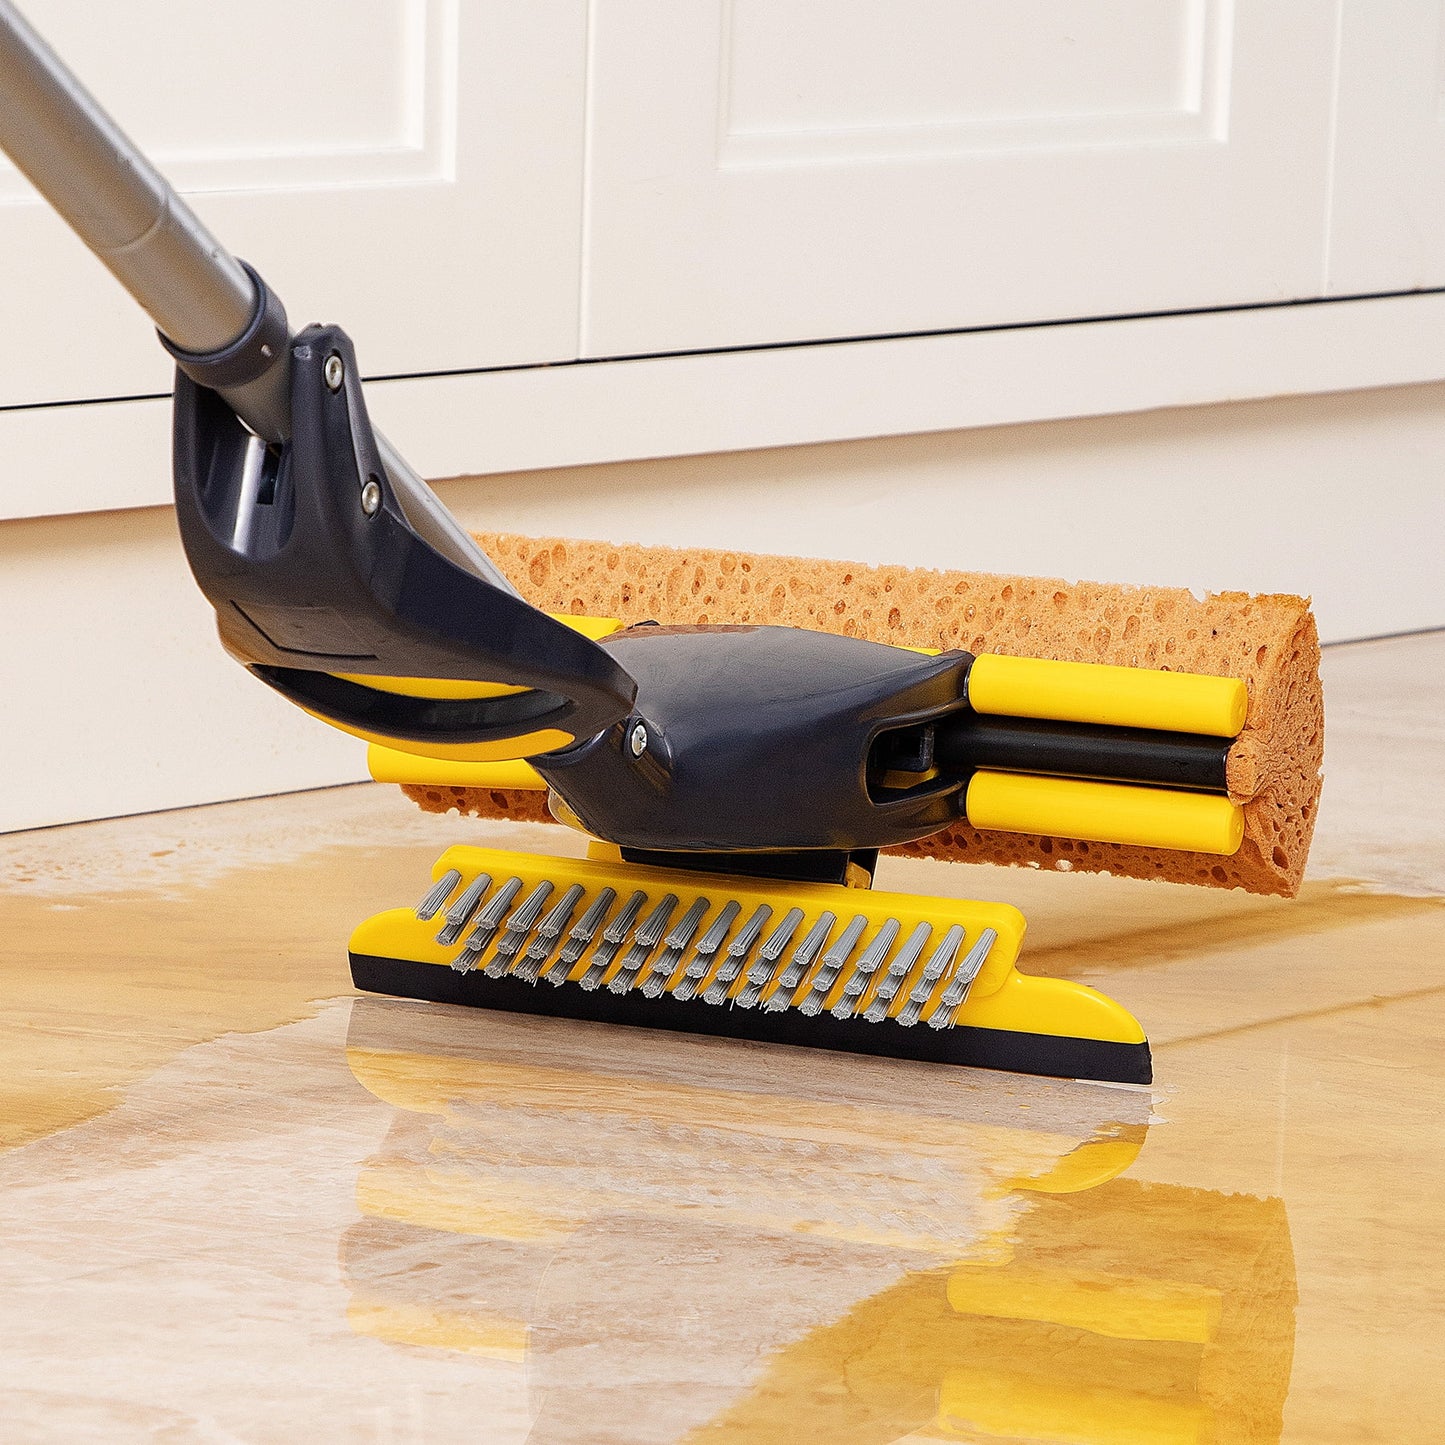 Eyliden Sponge Mop & Broom and Dustpan Cleaning Set